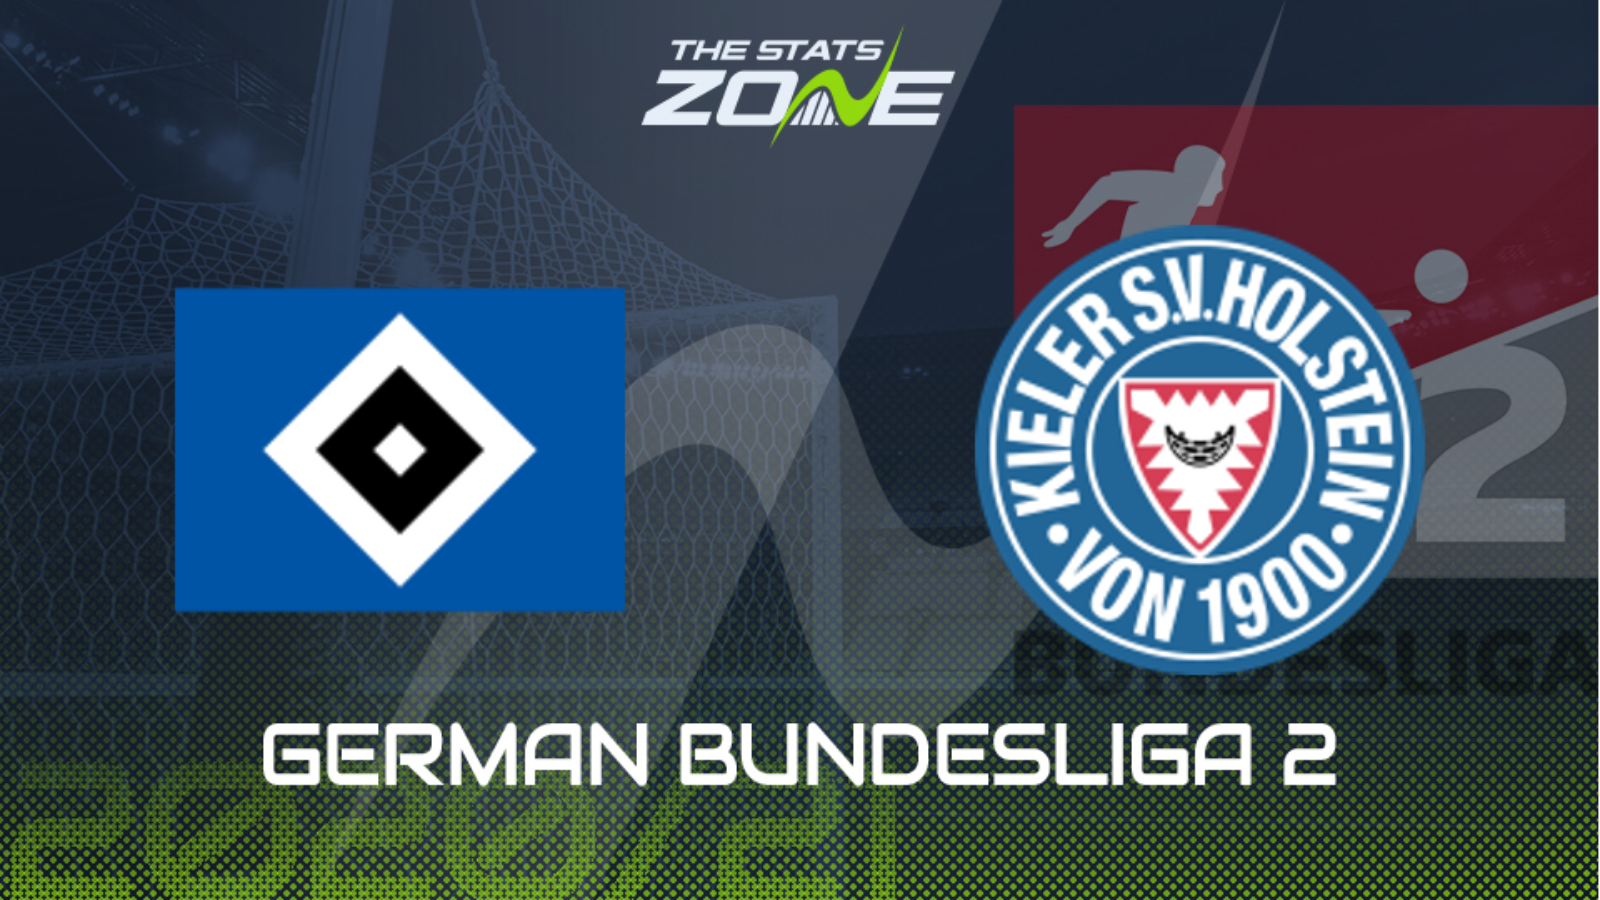 2020 21 German Bundesliga 2 Hamburger Sv Vs Holstein Kiel Preview Prediction The Stats Zone